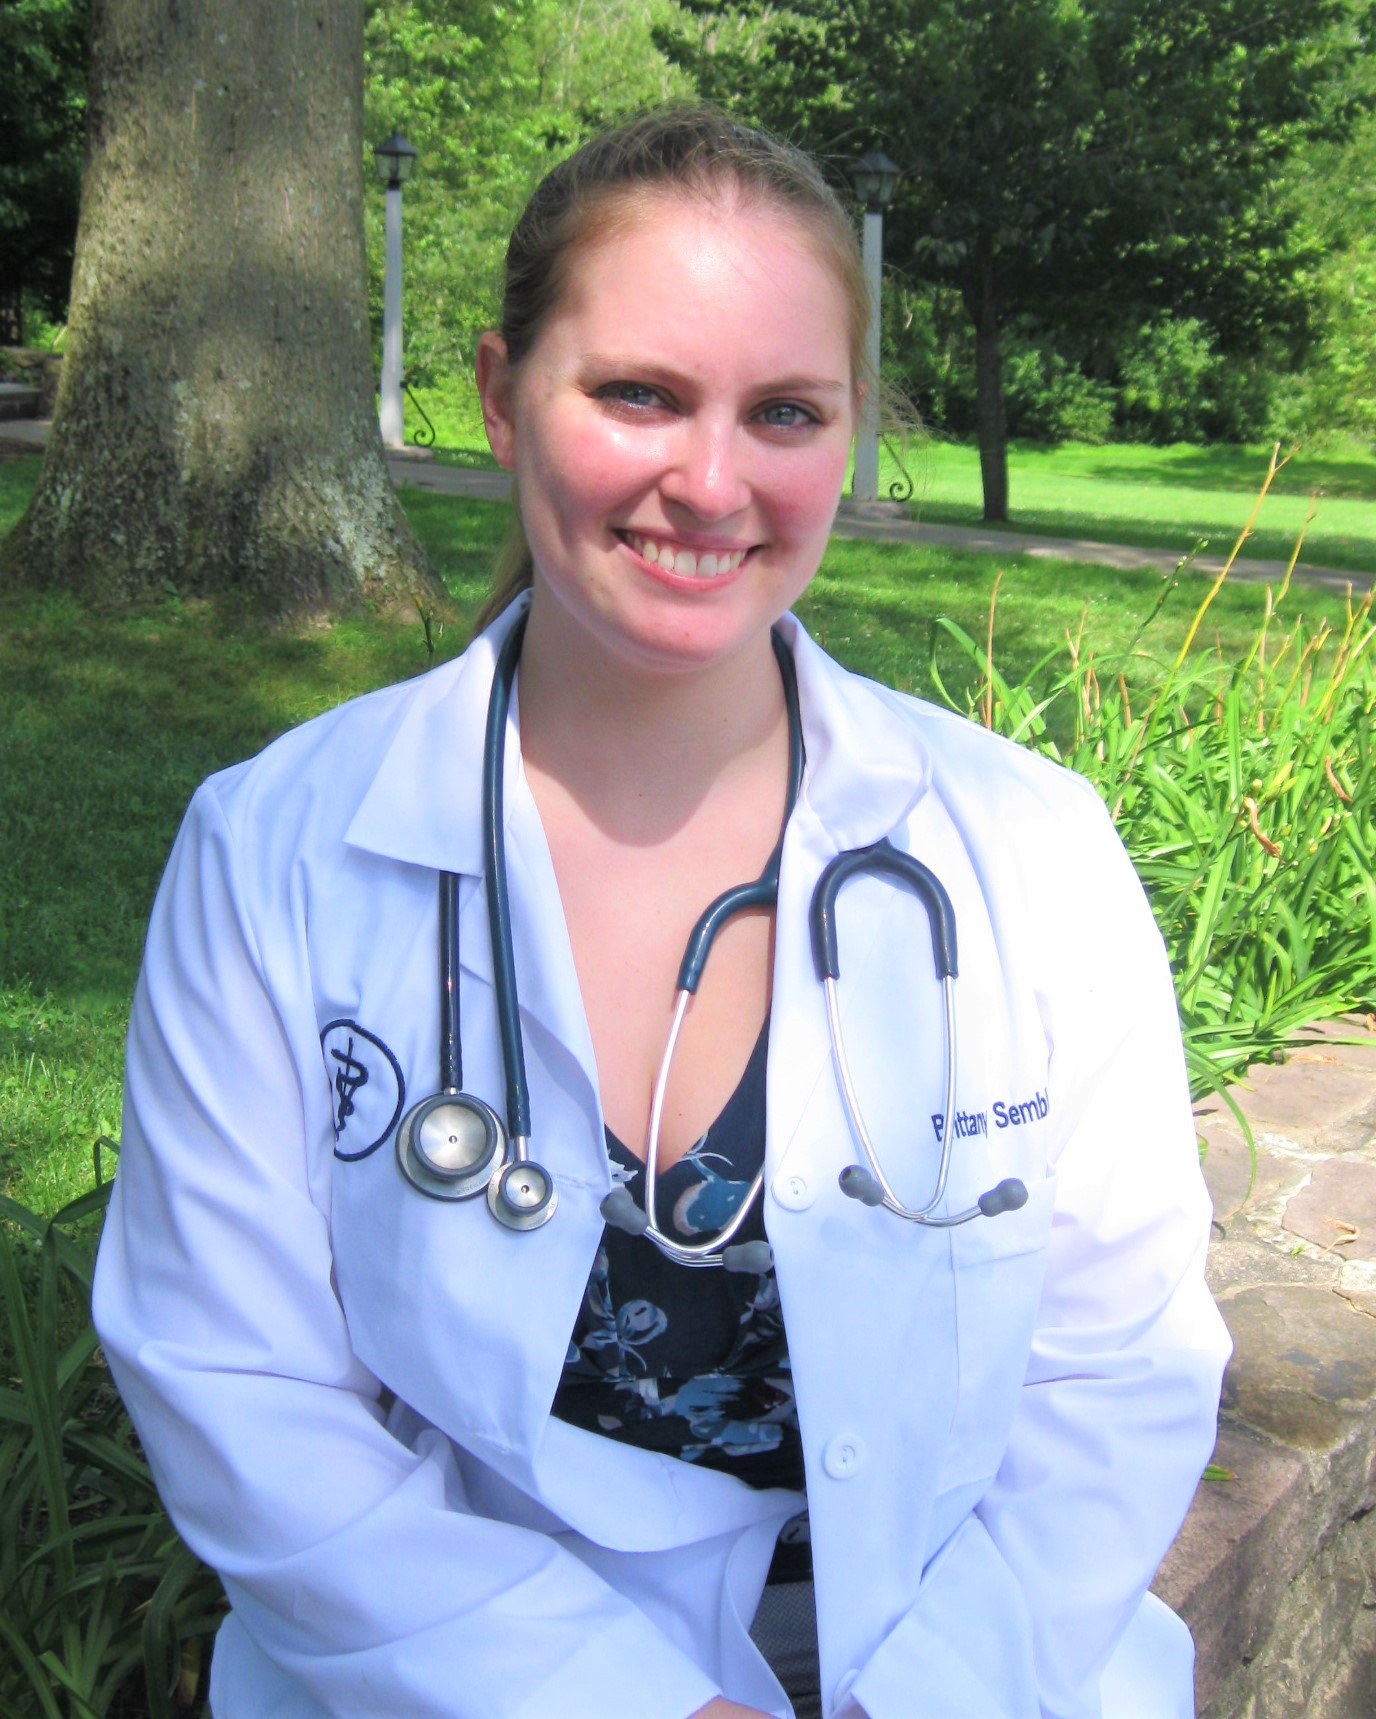 Dr. Sembler Joins Doylestown Veterinary Hospital